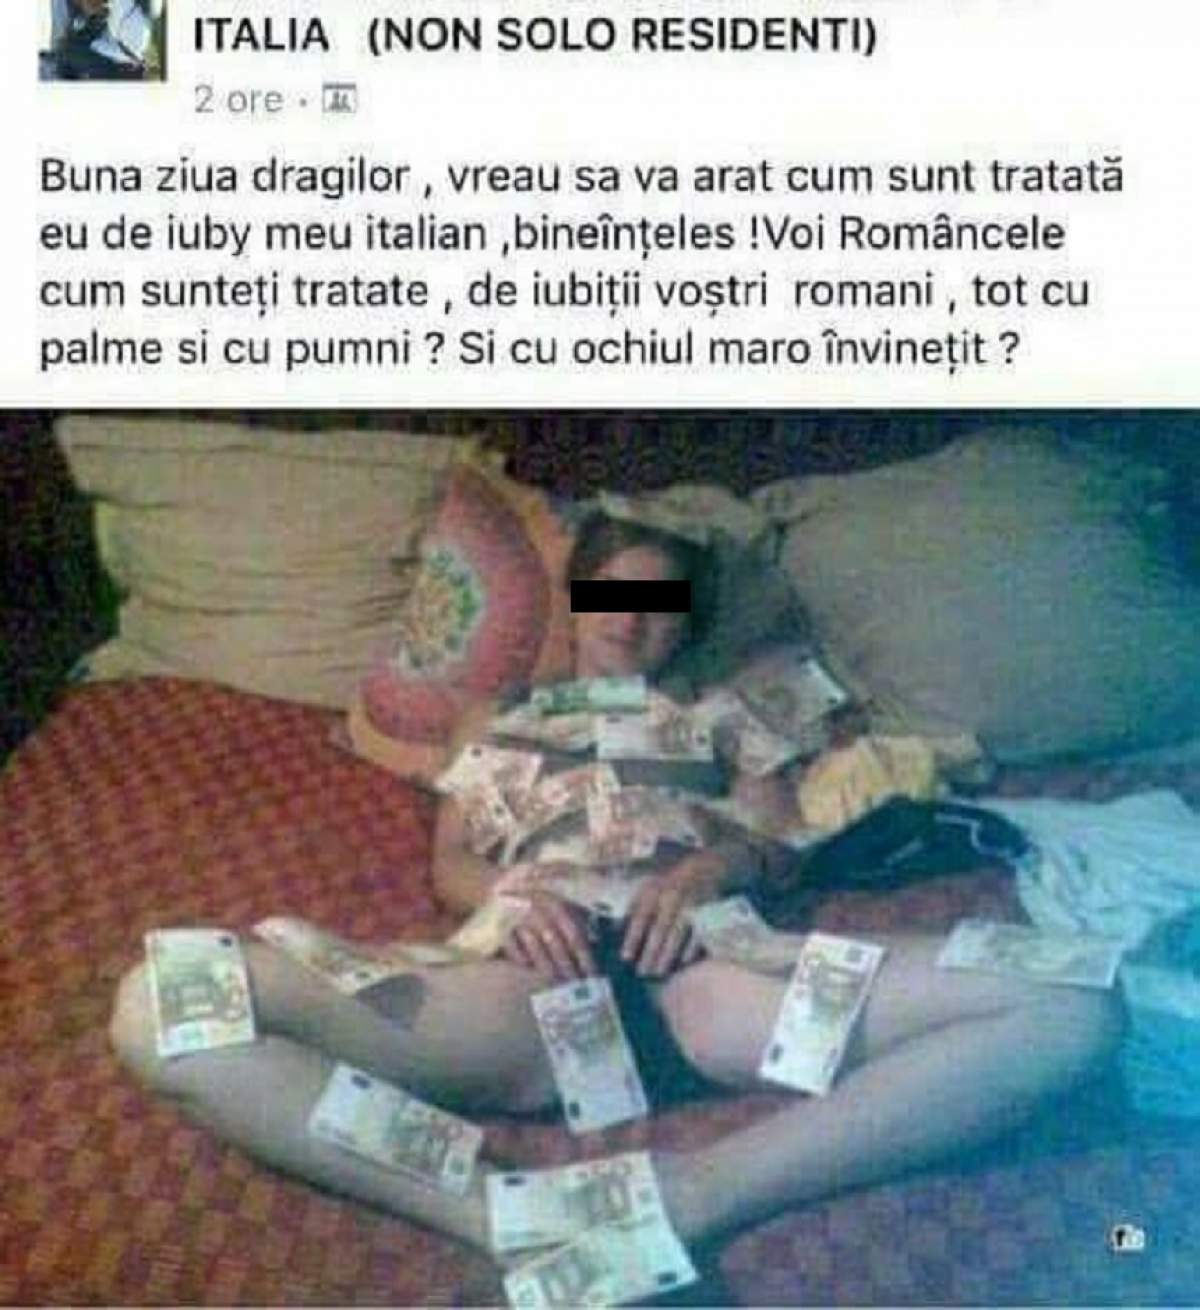 FOTO / Piţipoanca "îmbrăcată" în bani se laudă cu iubitul italian: "Voi, româncele, sunteţi tratate cu palme şi cu pumni?"